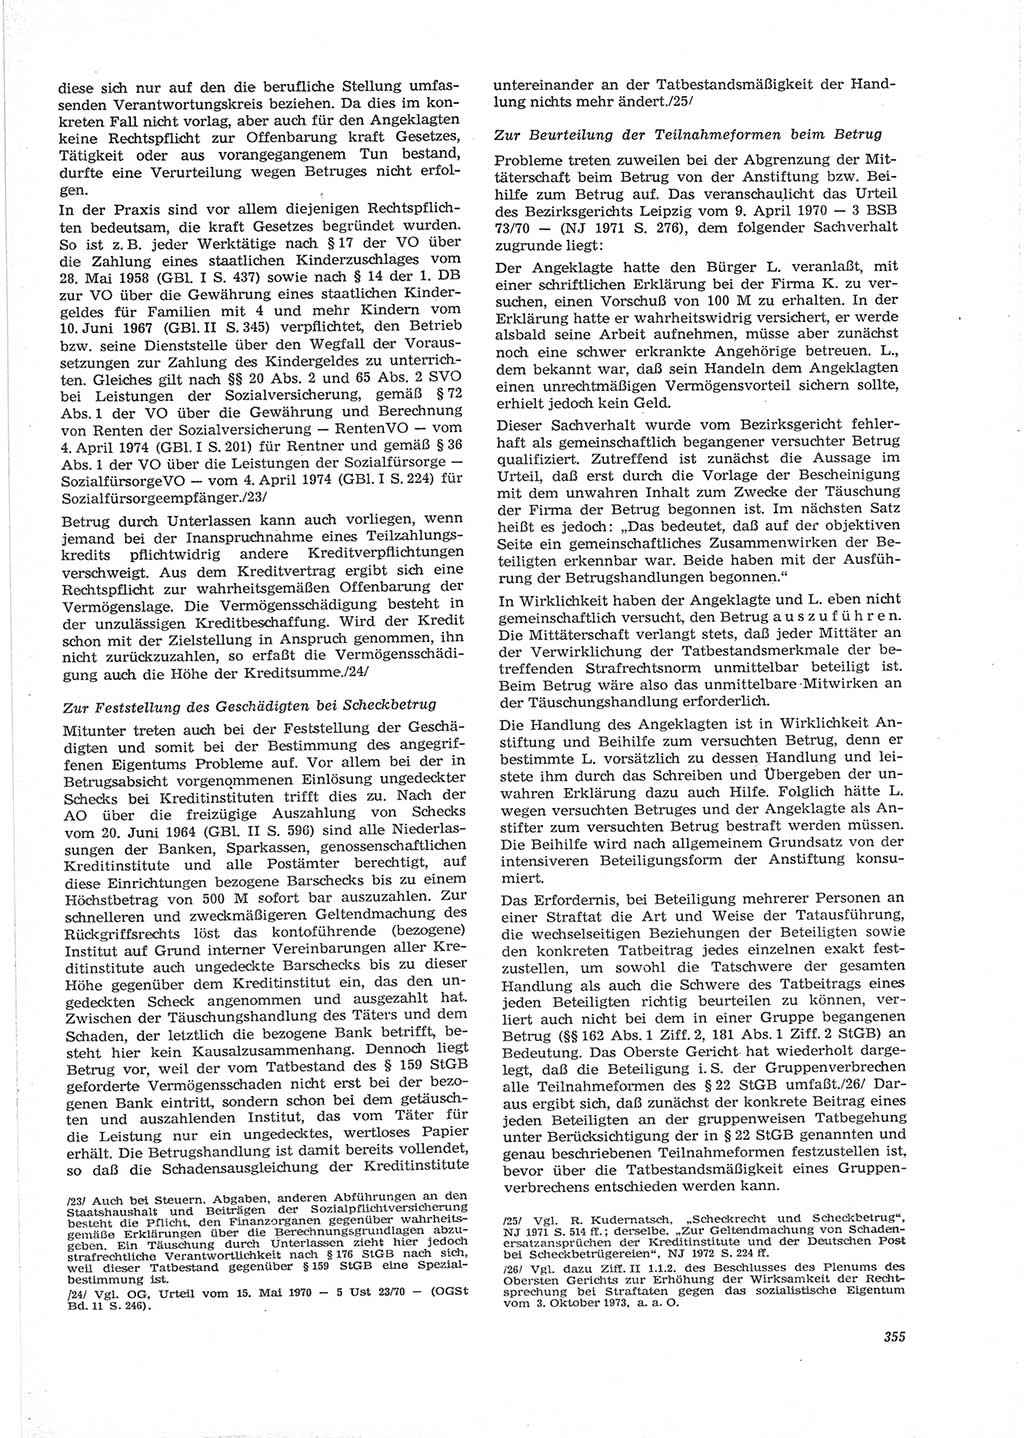 Neue Justiz (NJ), Zeitschrift für Recht und Rechtswissenschaft [Deutsche Demokratische Republik (DDR)], 28. Jahrgang 1974, Seite 355 (NJ DDR 1974, S. 355)